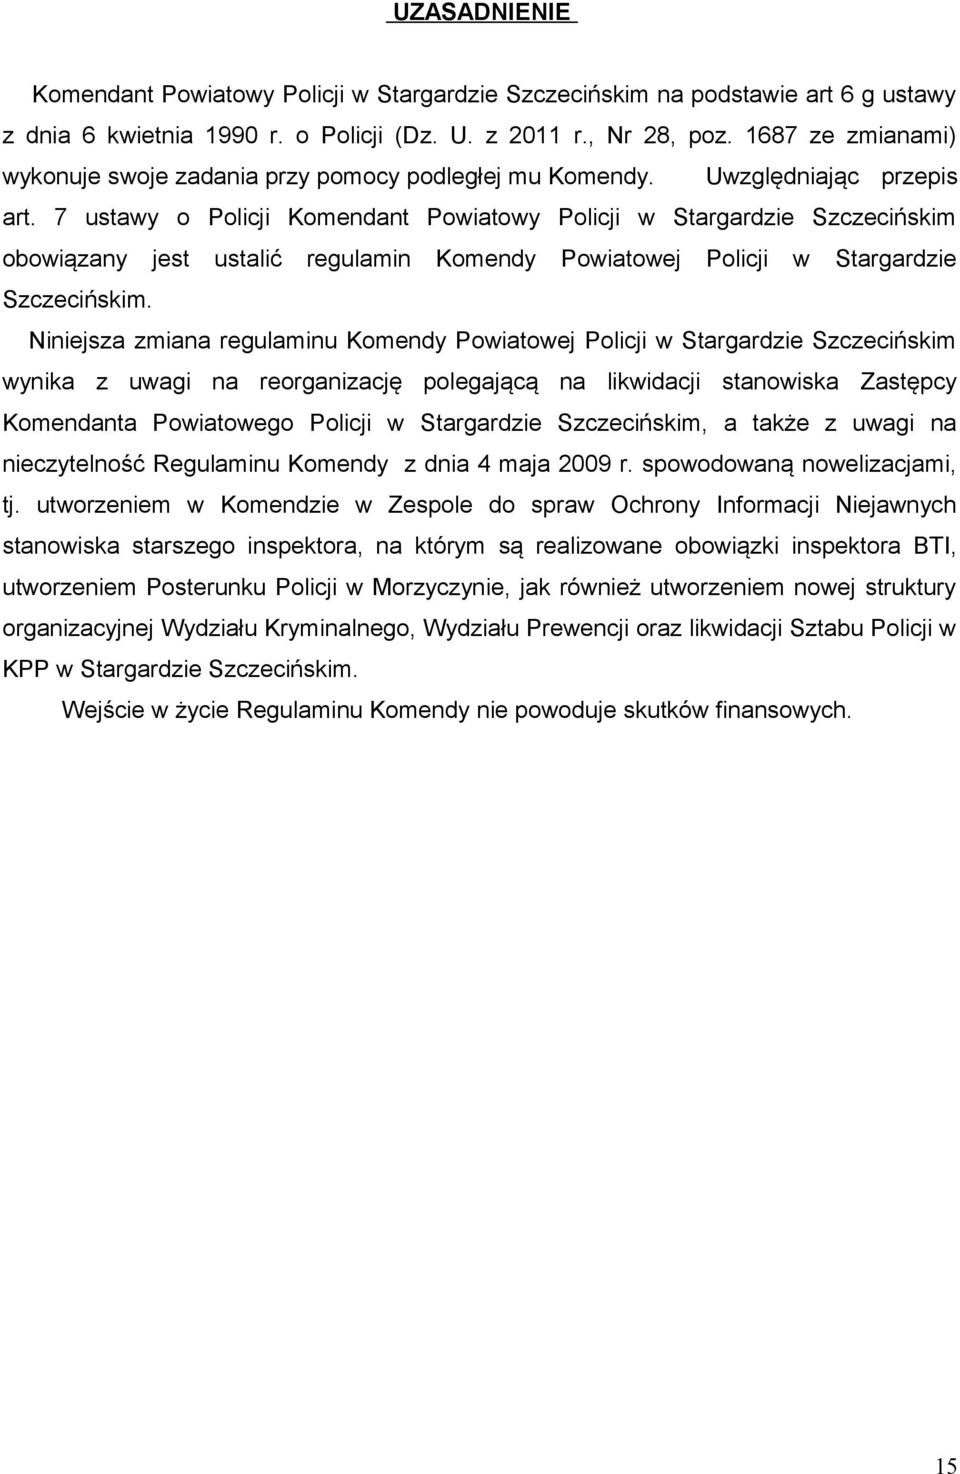 7 ustawy o Policji Komendant Powiatowy Policji w Stargardzie Szczecińskim obowiązany jest ustalić regulamin Komendy Powiatowej Policji w Stargardzie Szczecińskim.